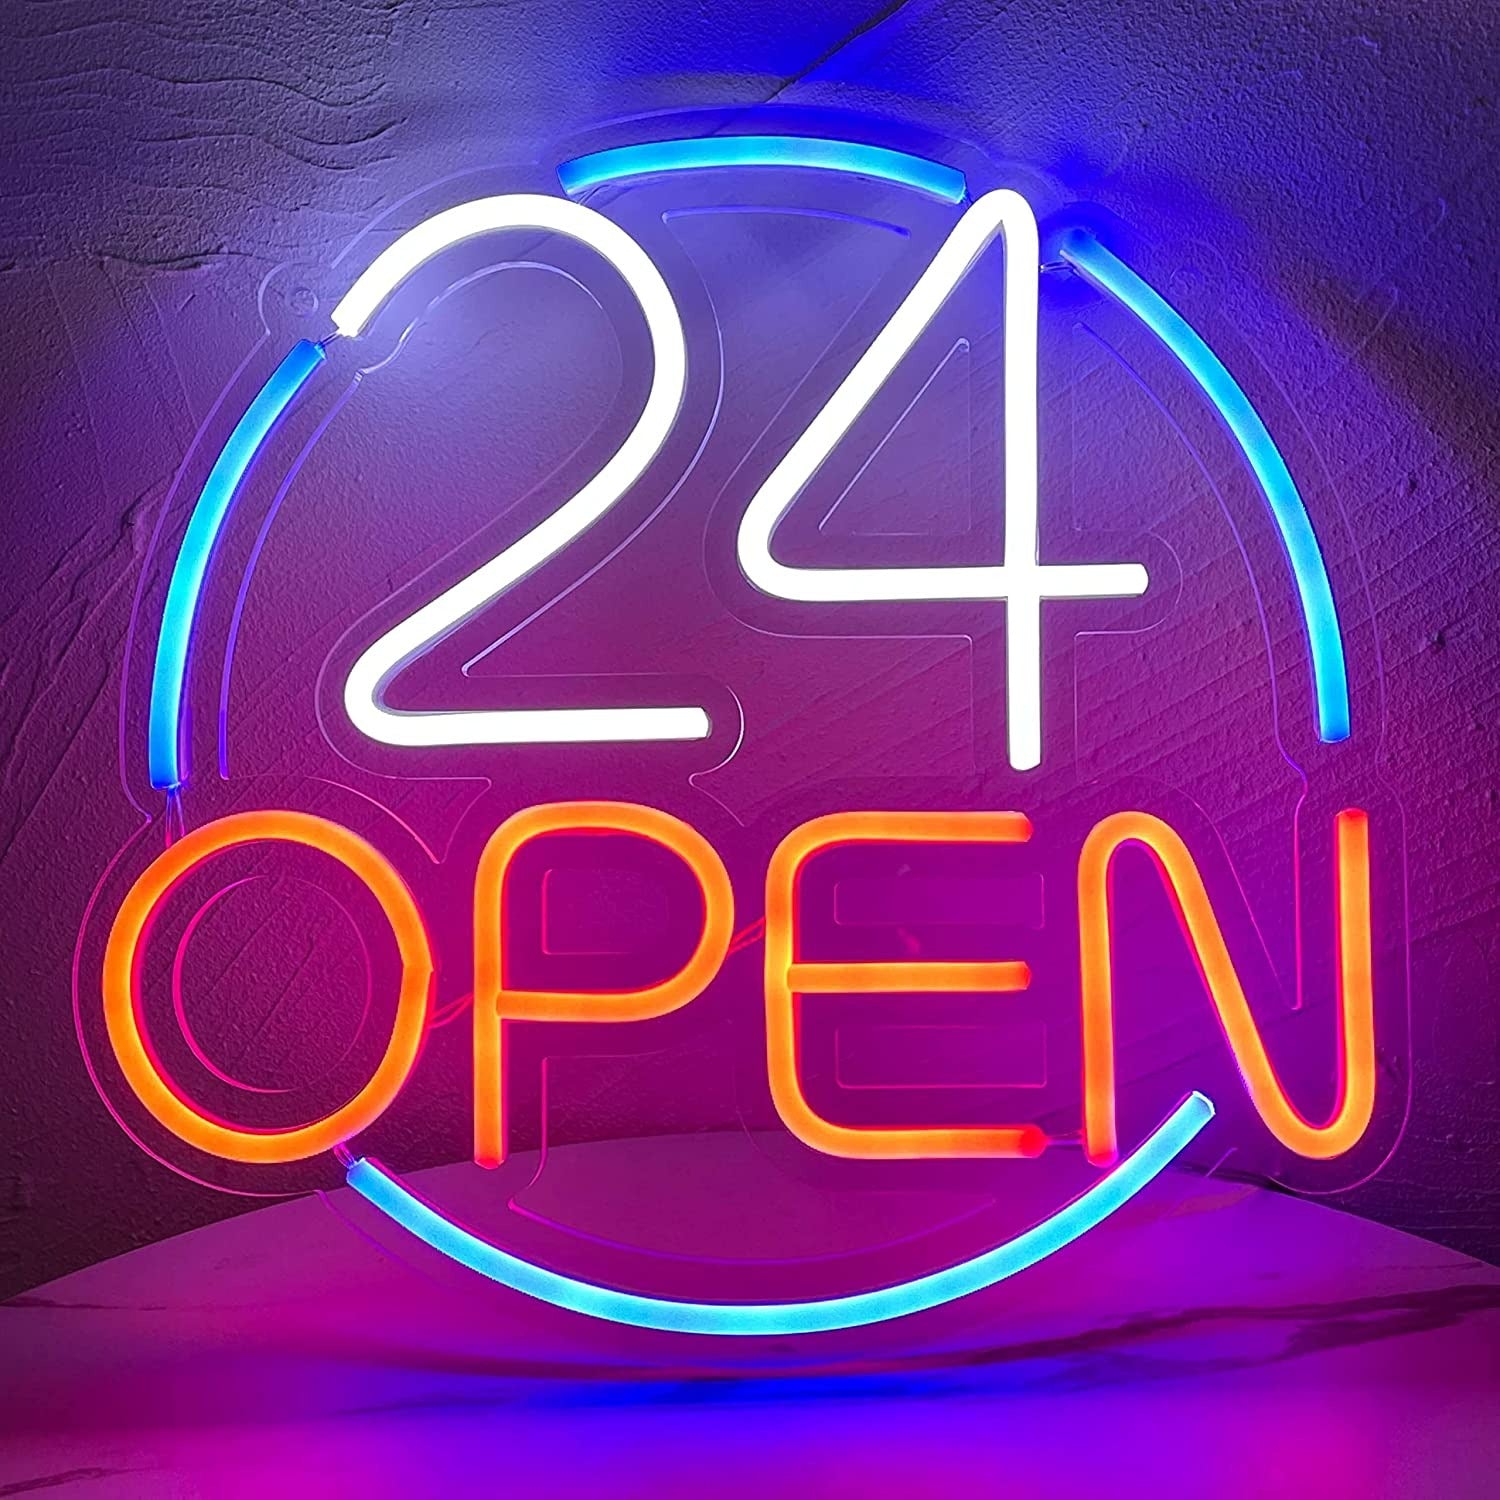 "Open 24 hours" neon sign